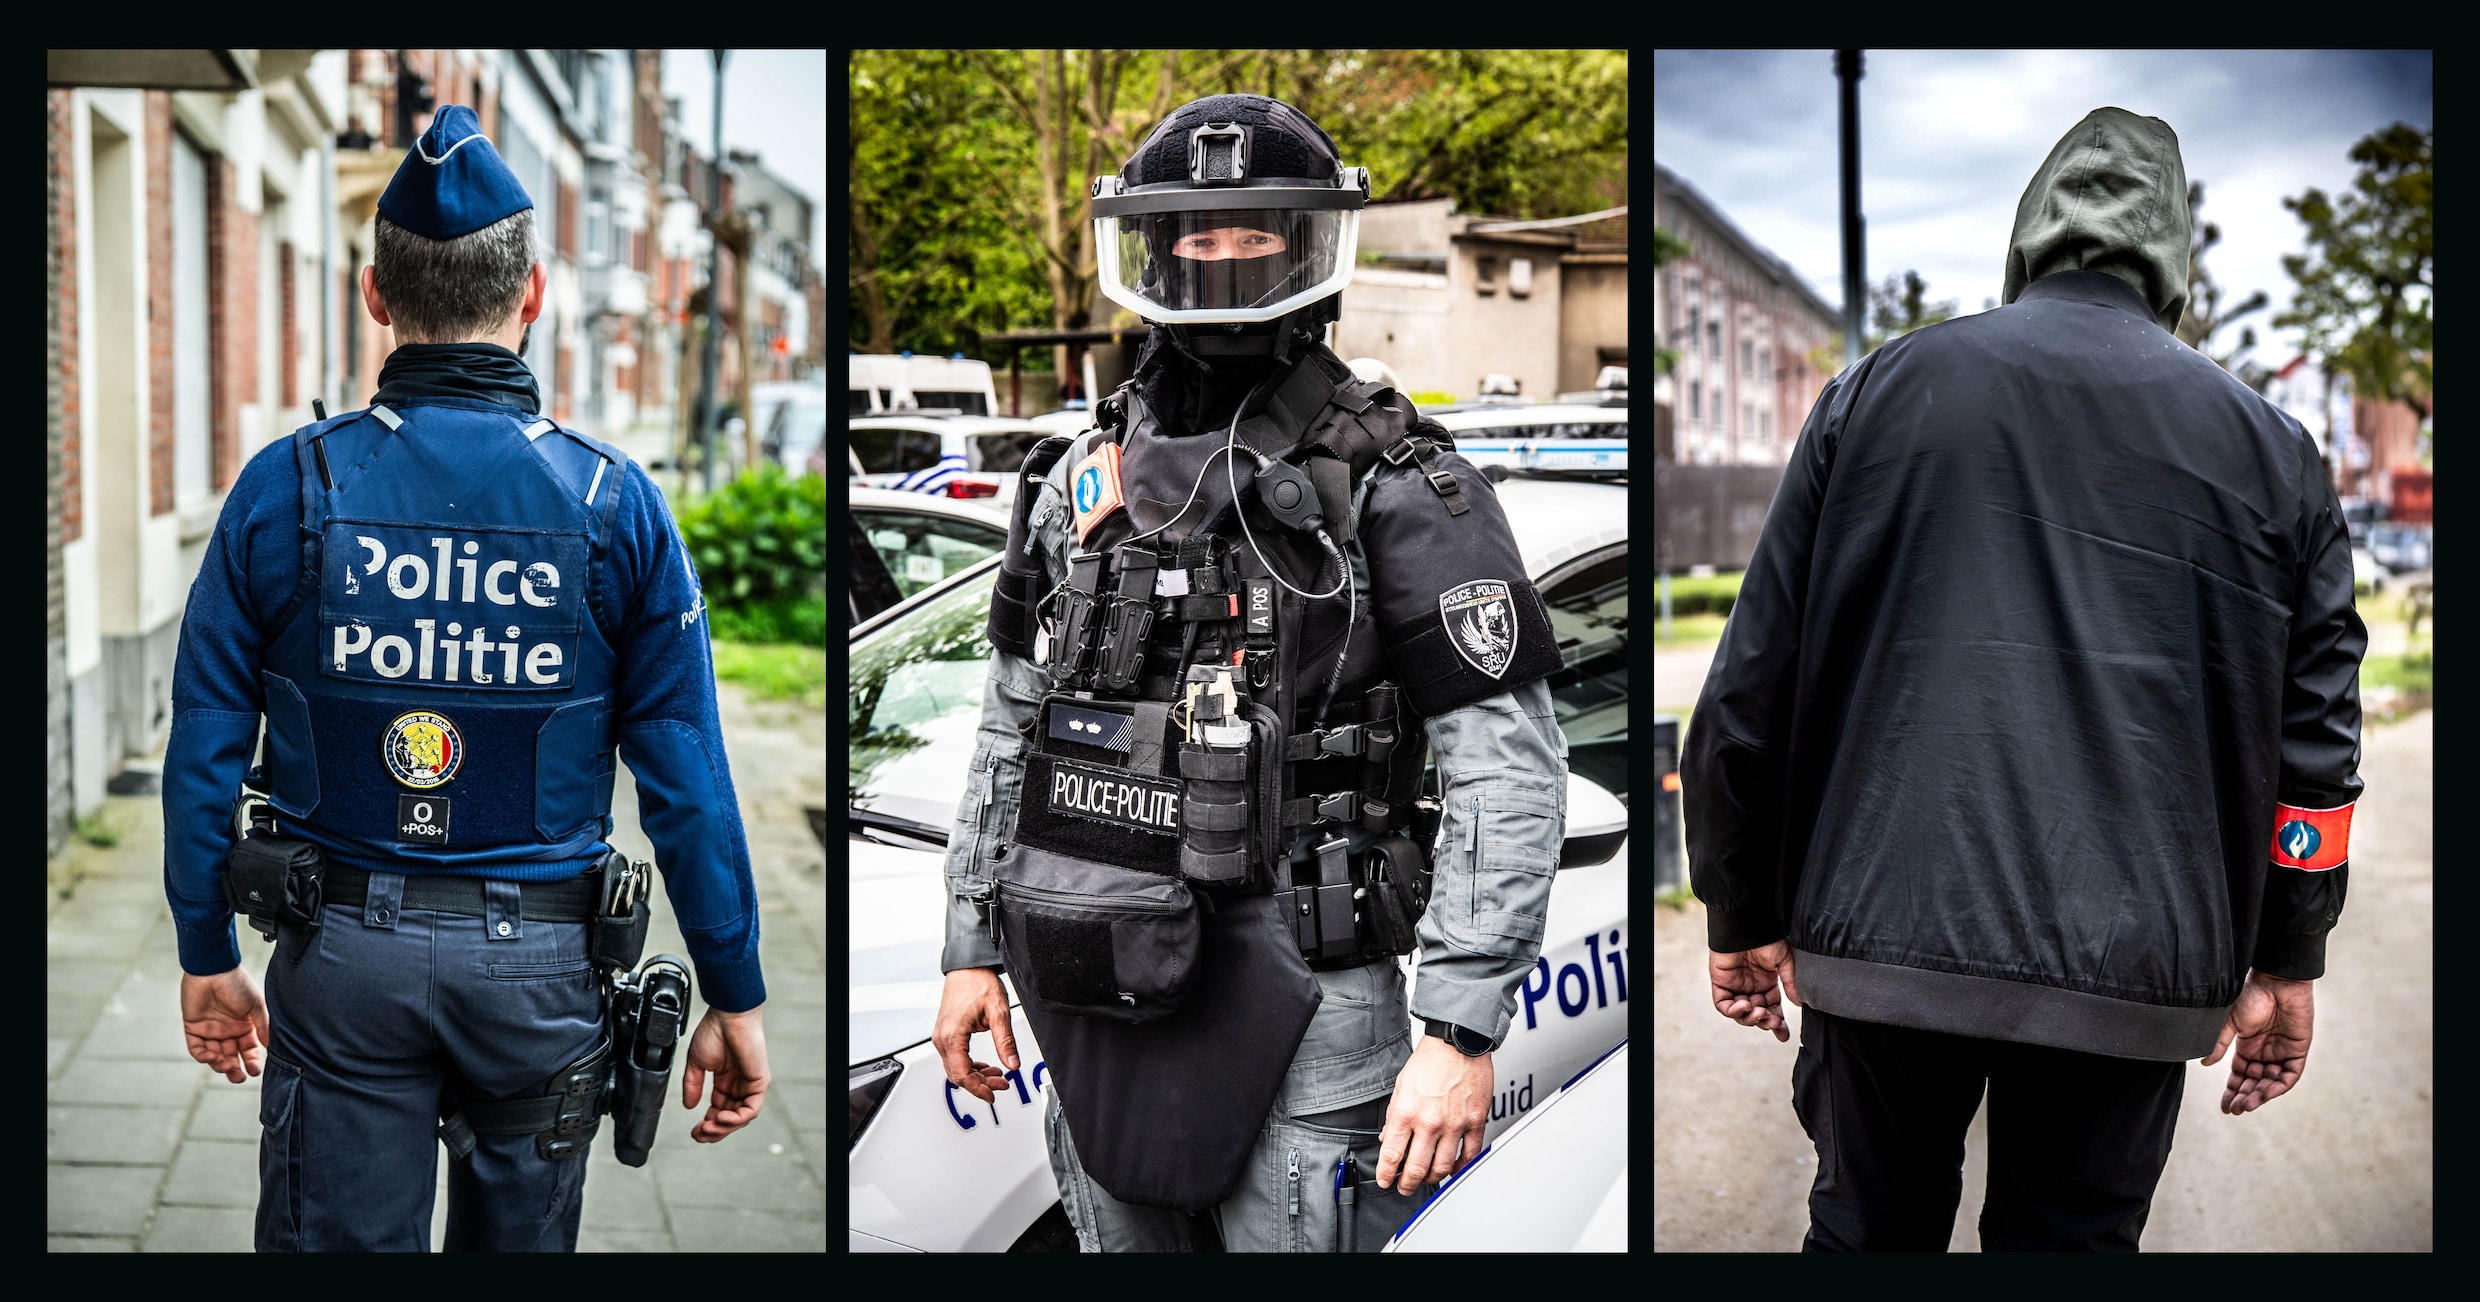 ‘In mijn vijftien jaar als politieman heb ik nog nooit zulk geweld meegemaakt. Het is oorlog’: Brusselse agenten getuigen